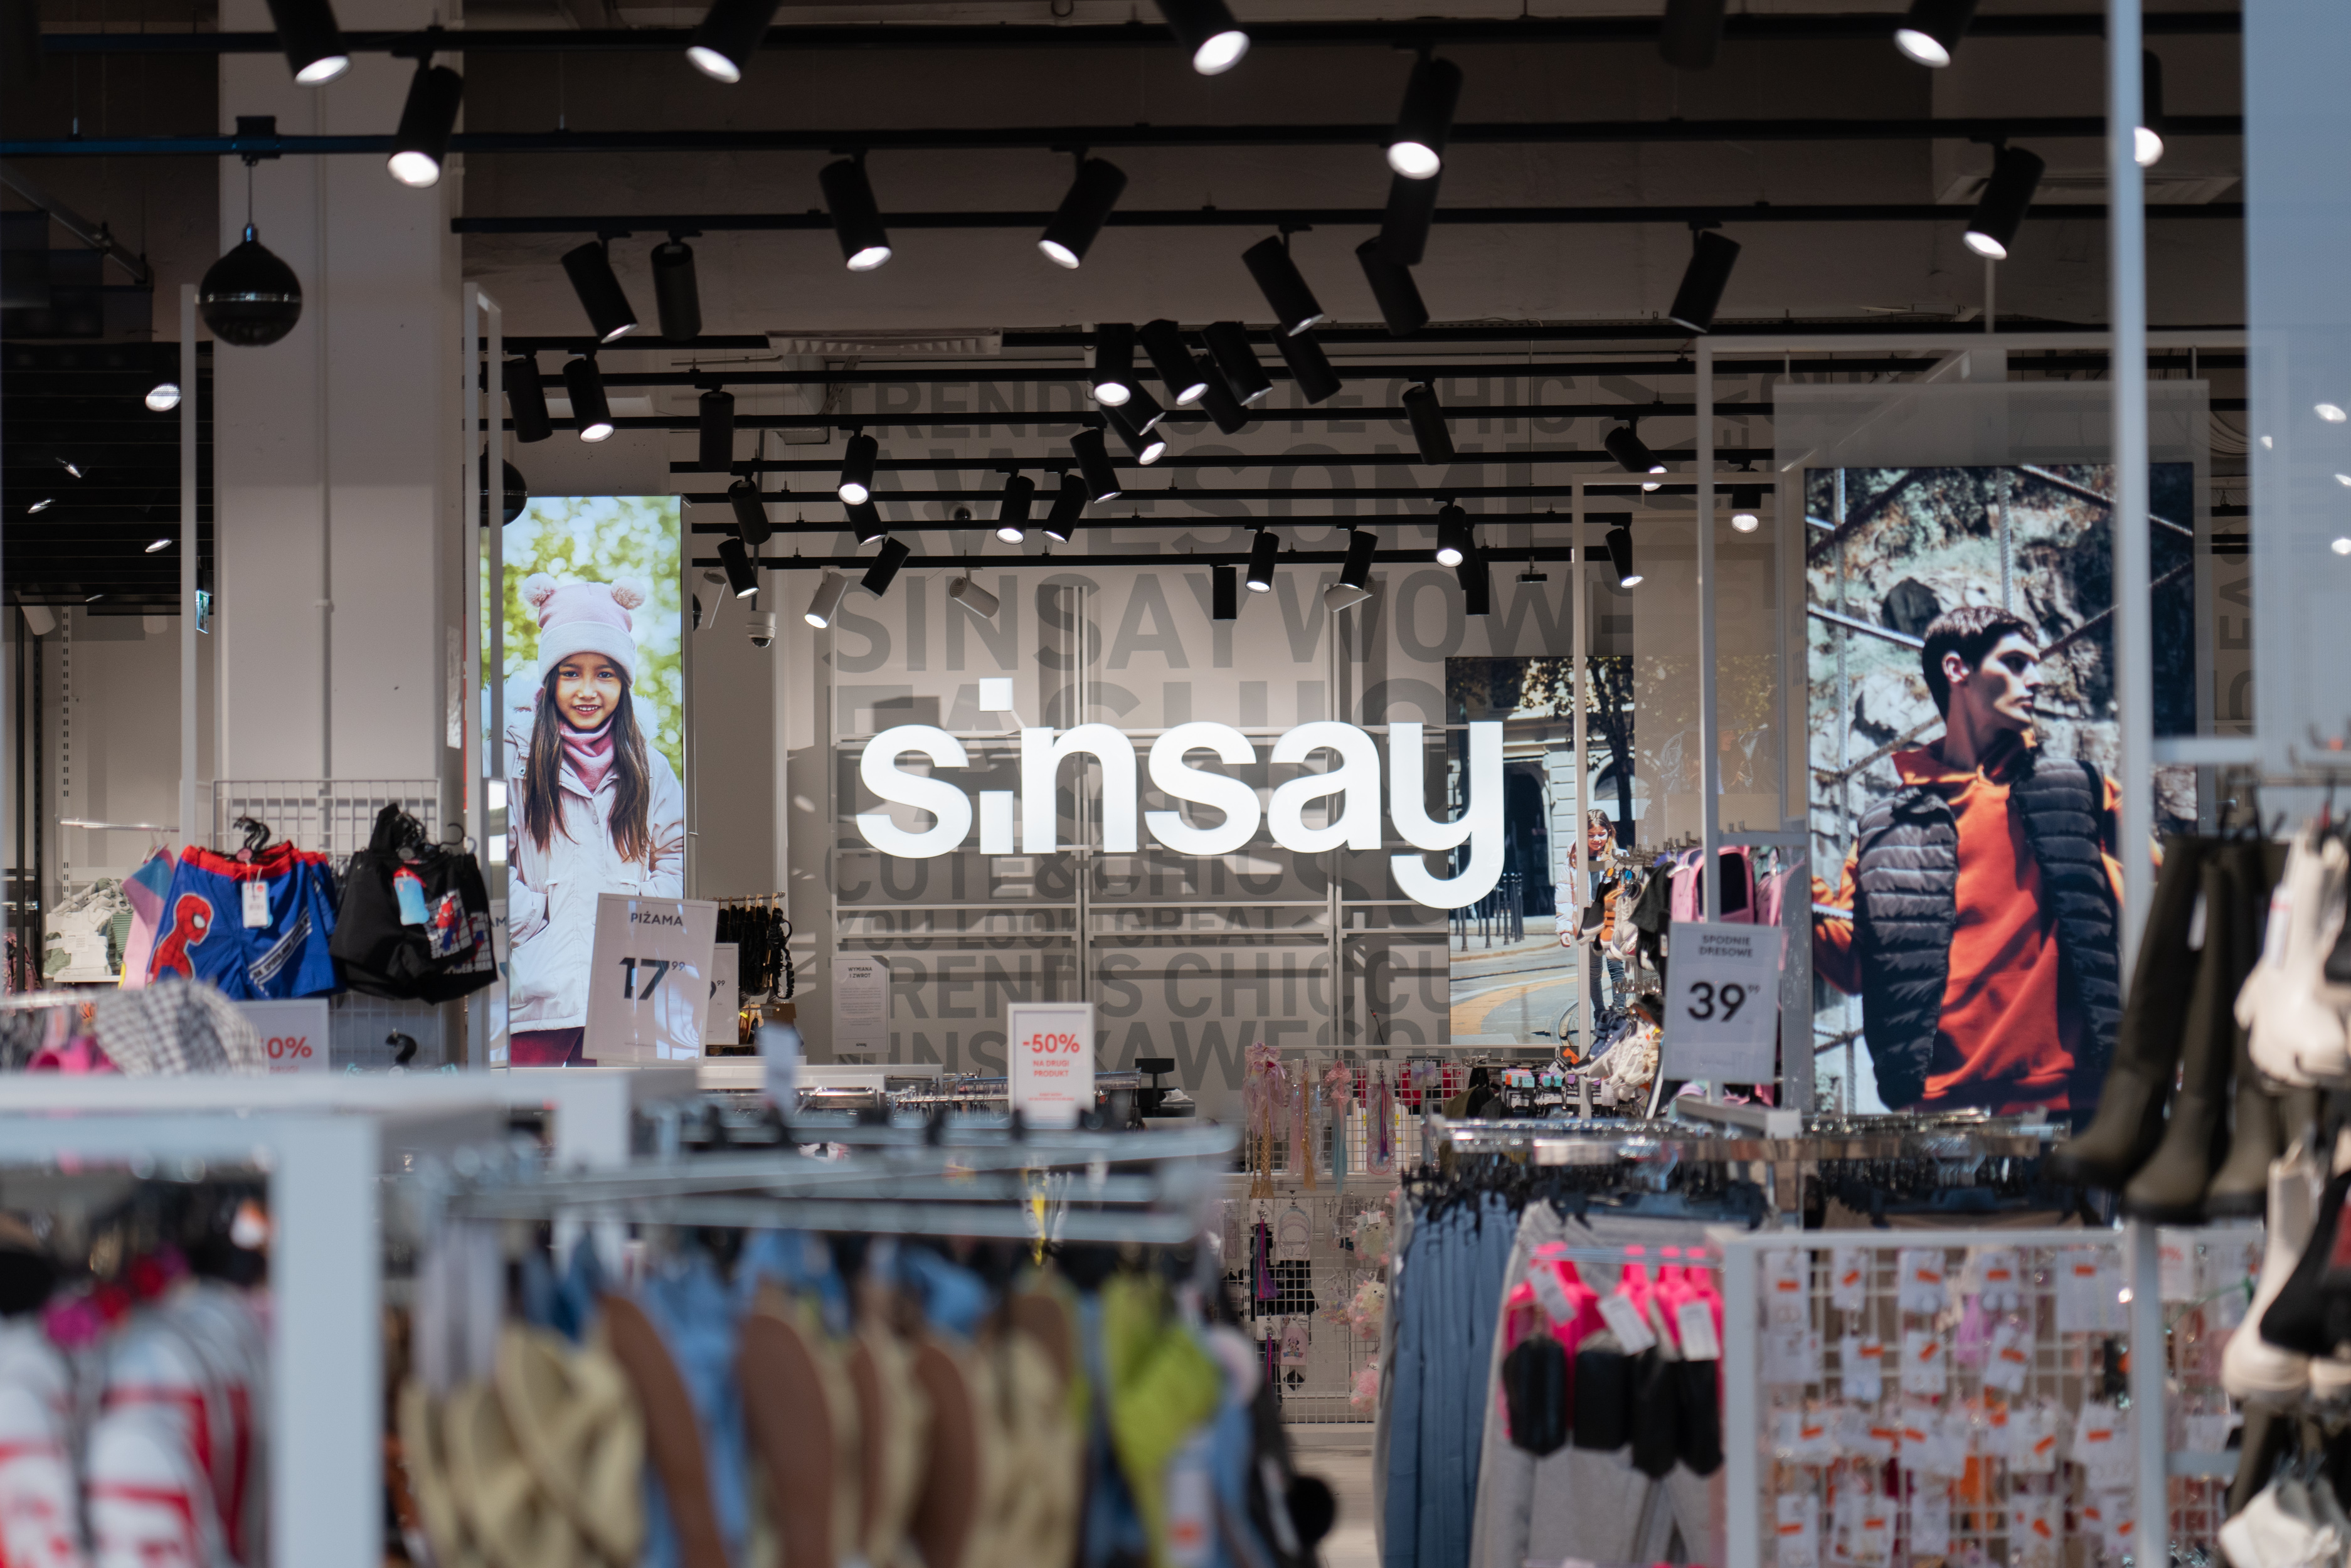 Produkty marki Sinsay dla całej rodziny